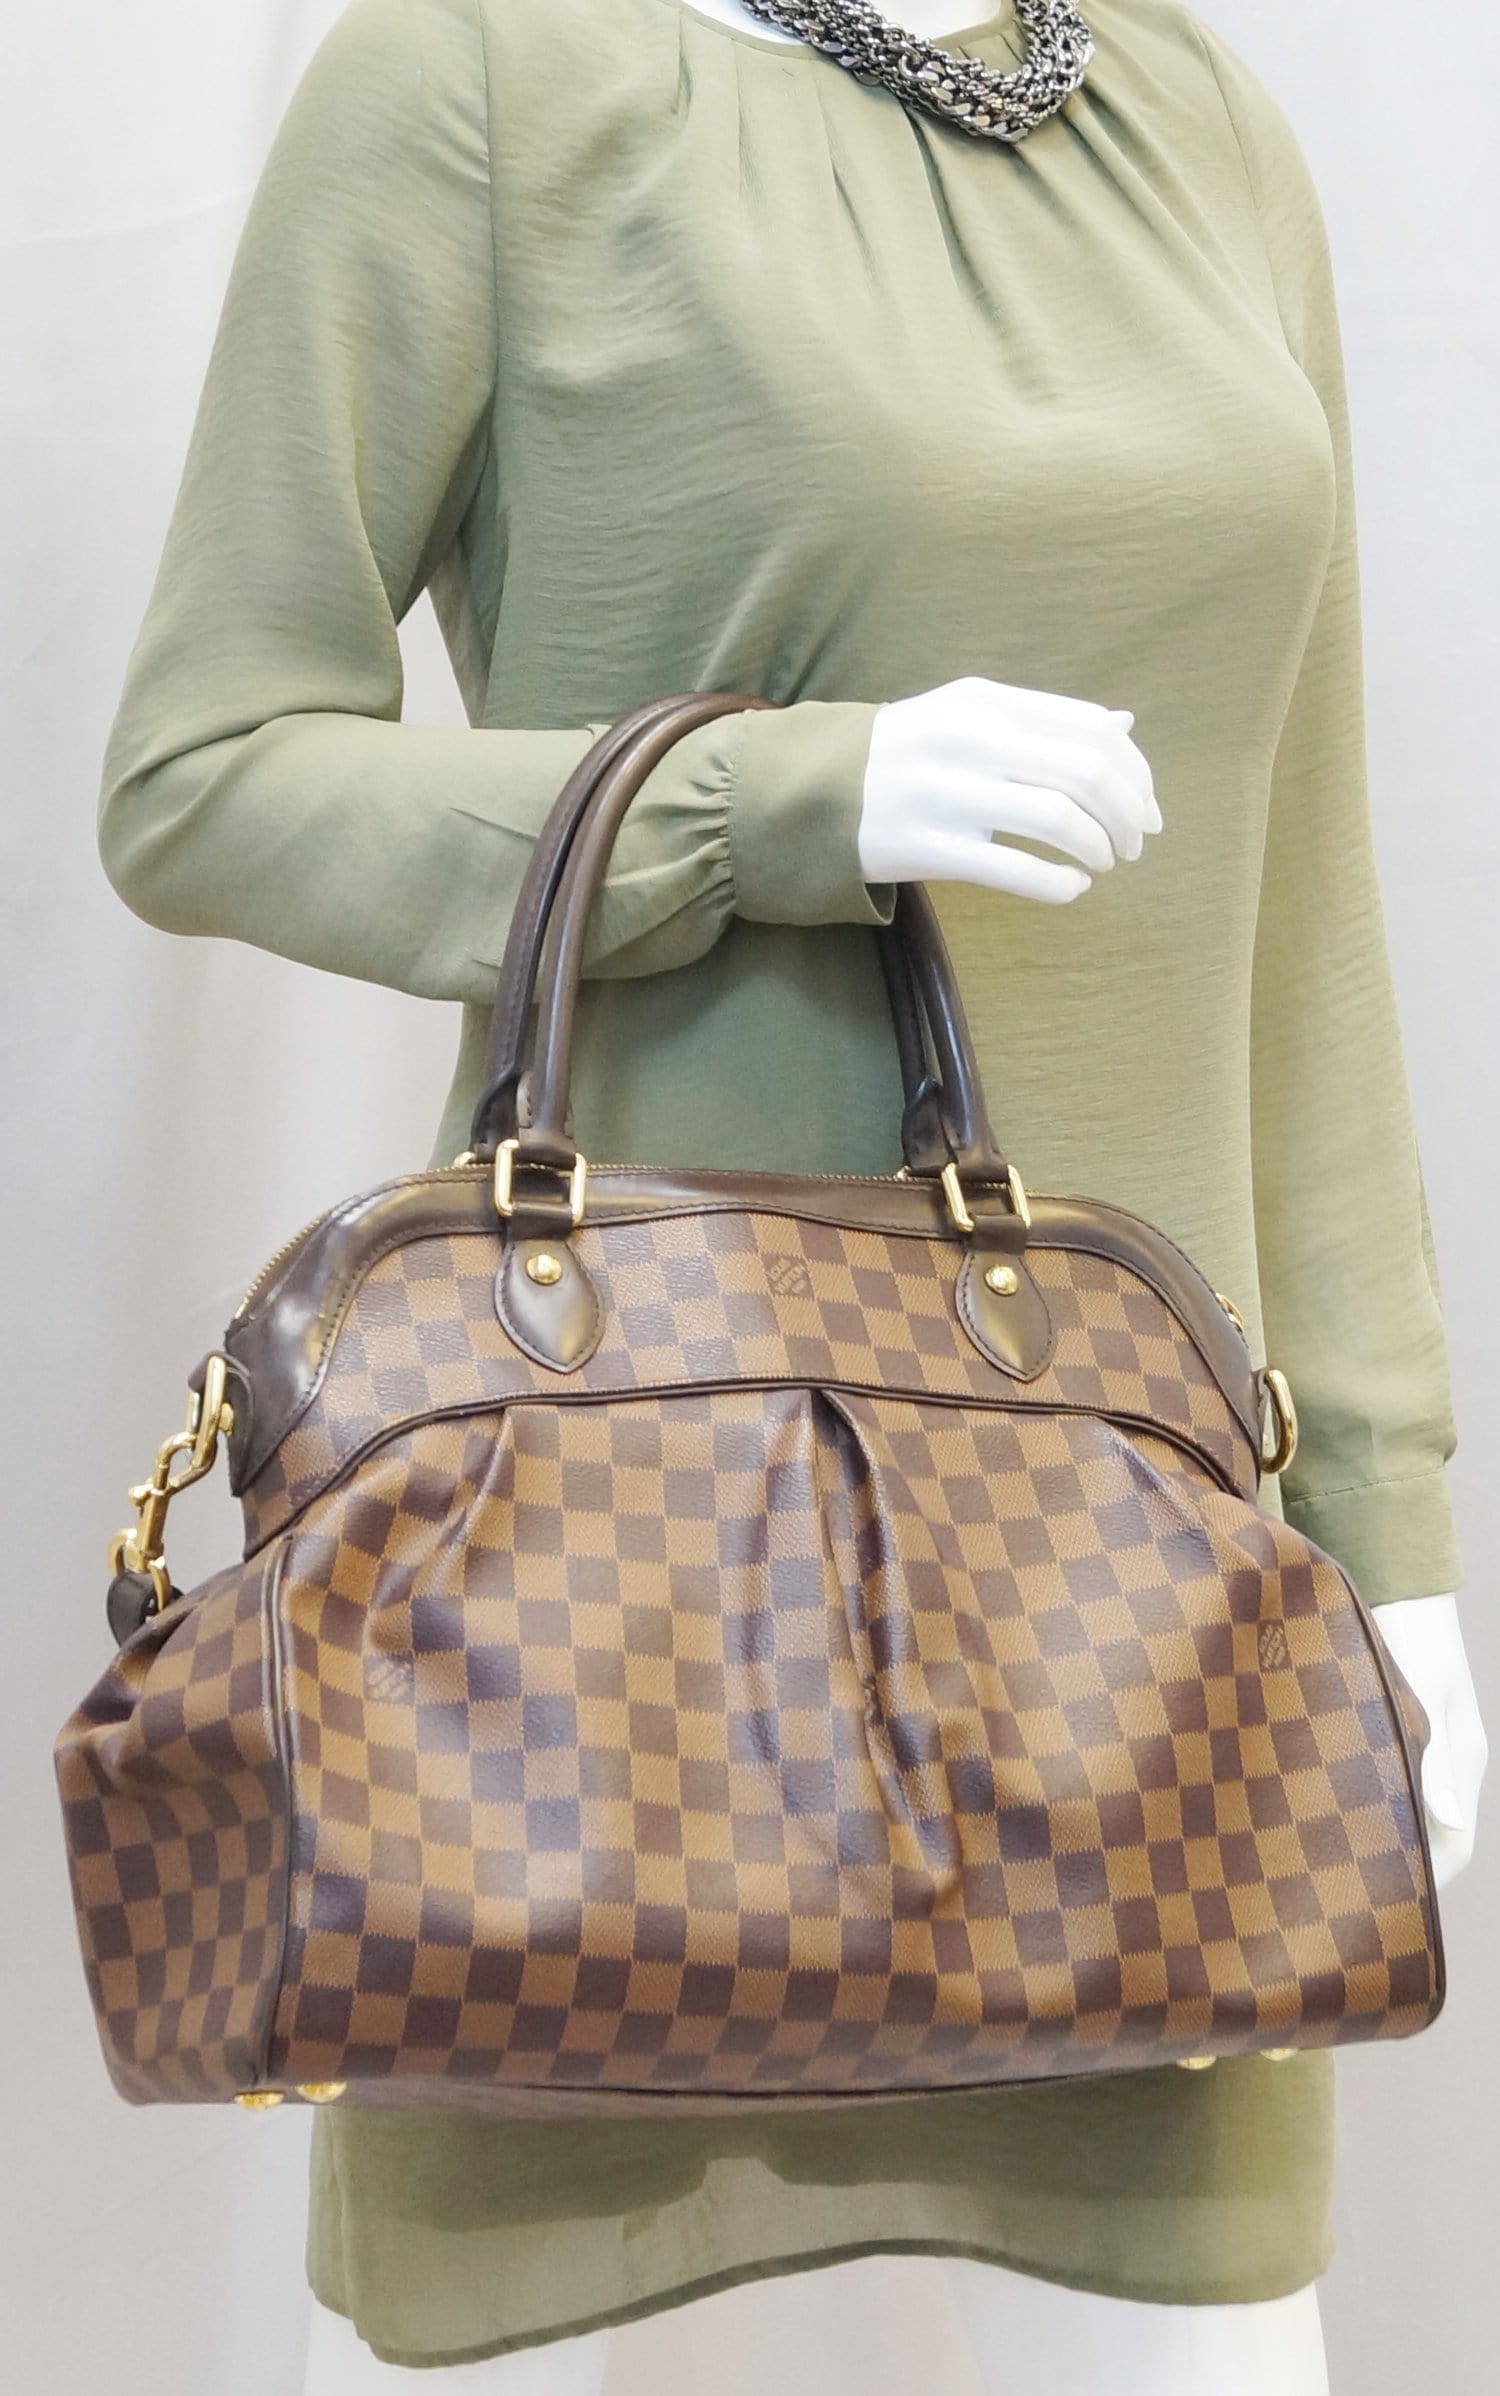 Authentic Louis Vuitton Trevi GM Damier Ebene 2 Way Handbag Shoulder Strap